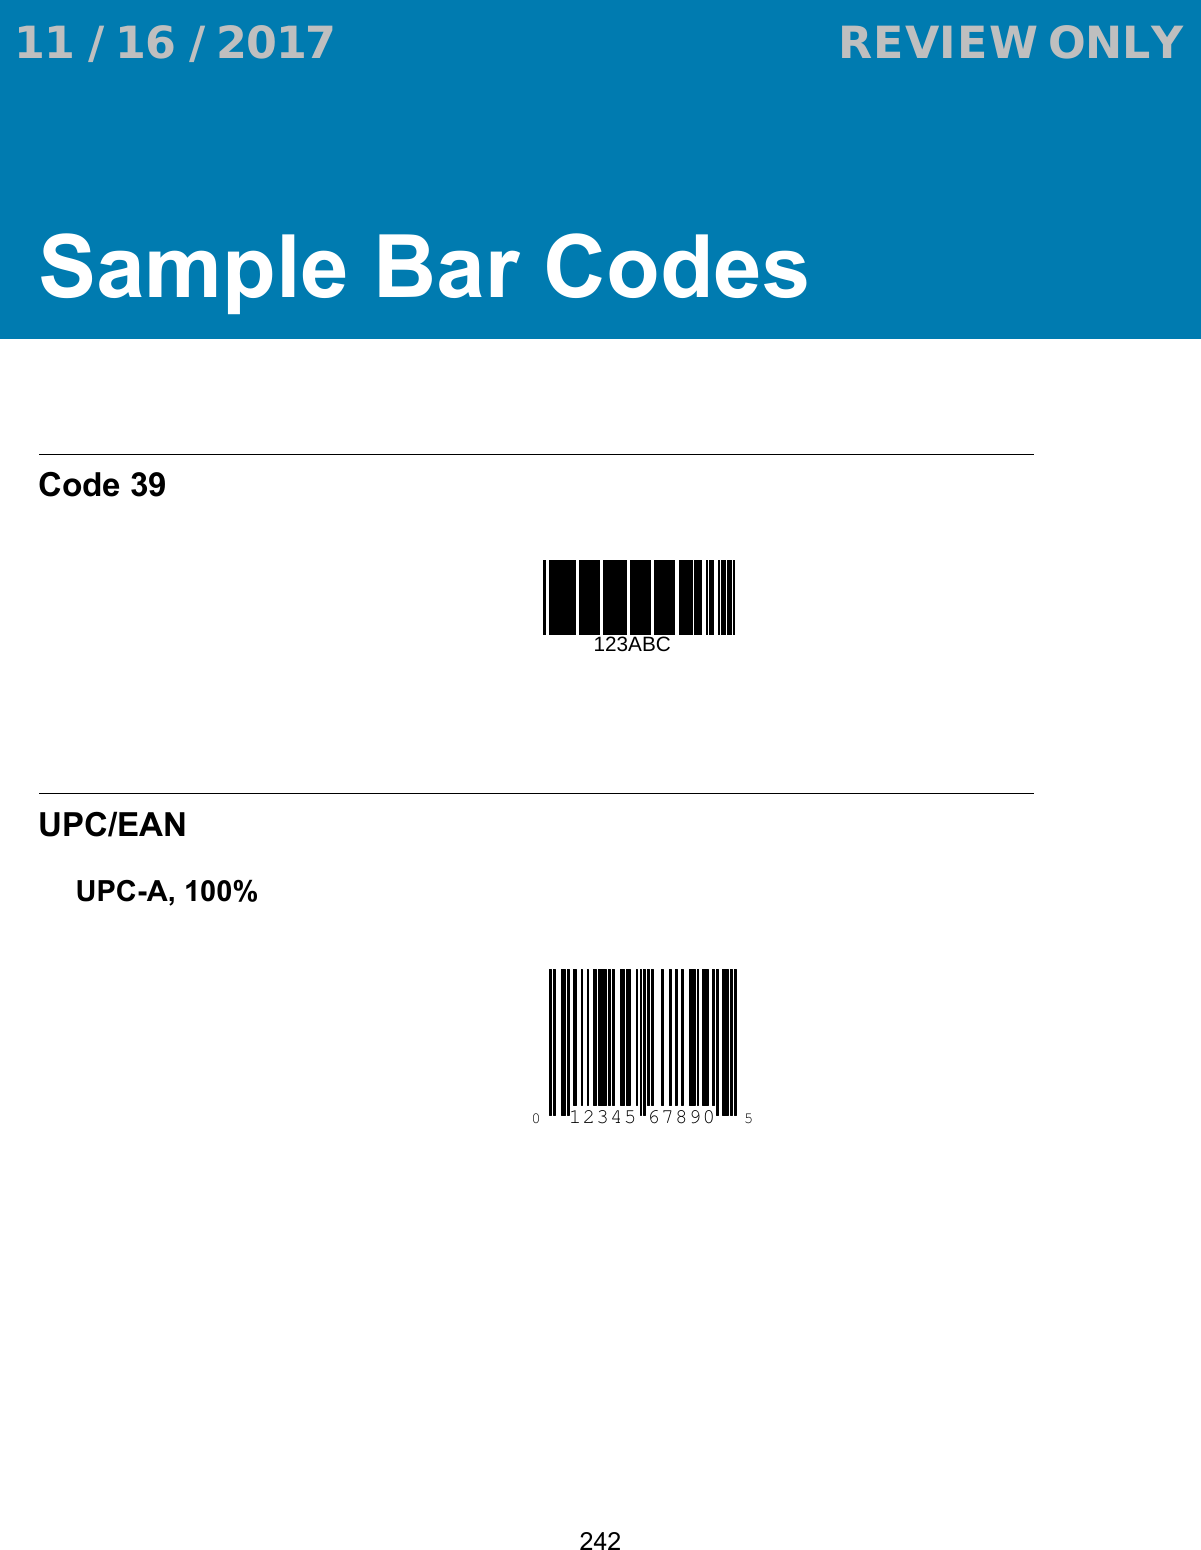 242Sample Bar CodesCode 39UPC/EAN UPC-A, 100%123ABC012345678905 11 / 16 / 2017                                  REVIEW ONLY                             REVIEW ONLY - REVIEW ONLY - REVIEW ONLY